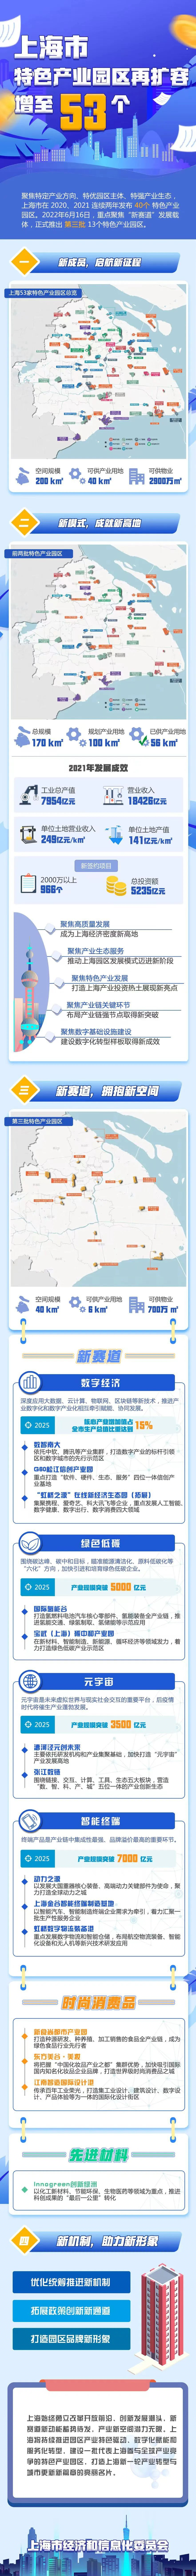 上海特色产业园区扩容.jpg